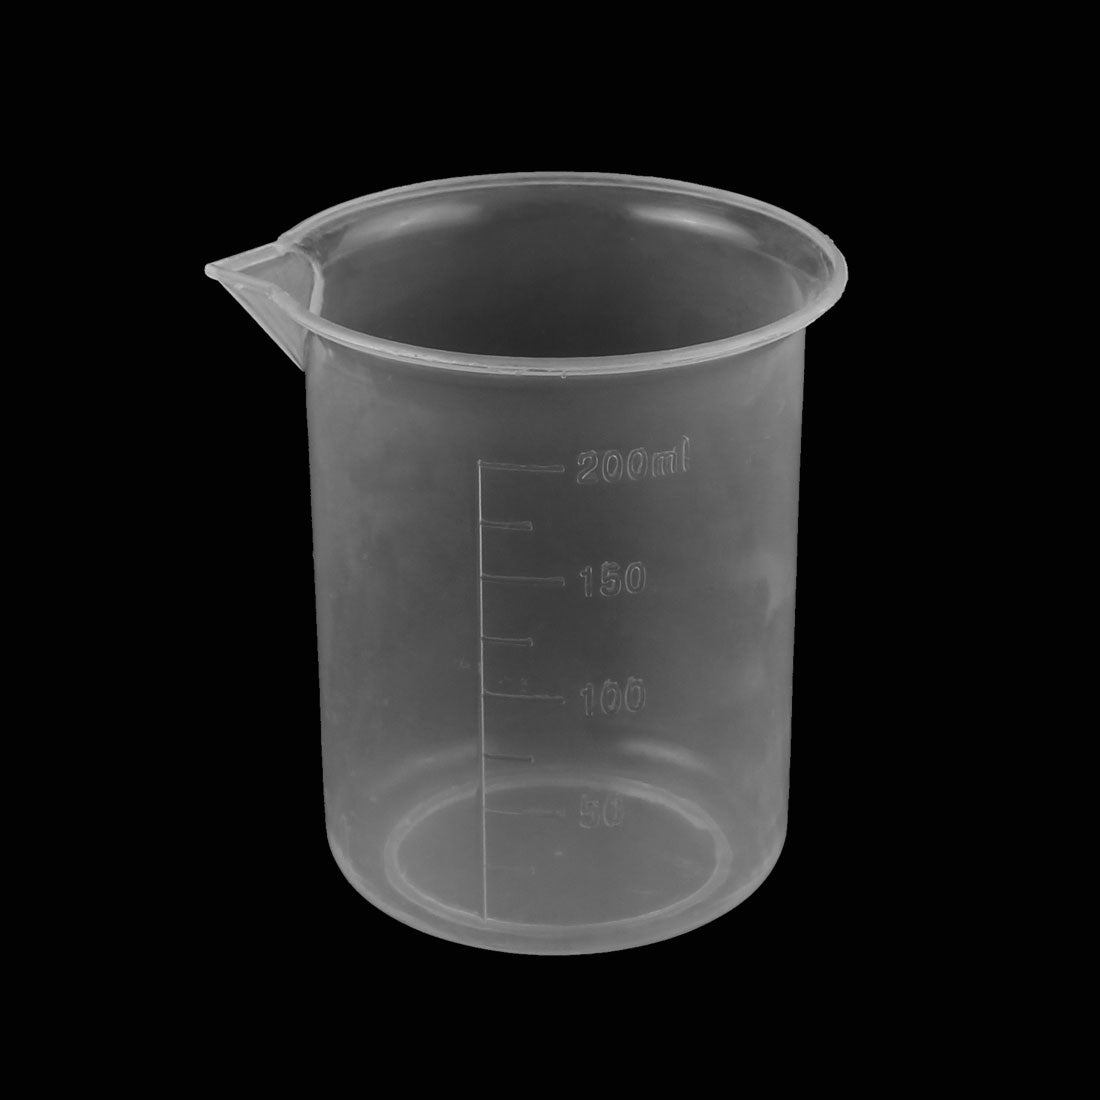 uxcell Uxcell Kitchen Lab 200mL Plastic Measuring Cup Jug Pour Spout Container 2pcs